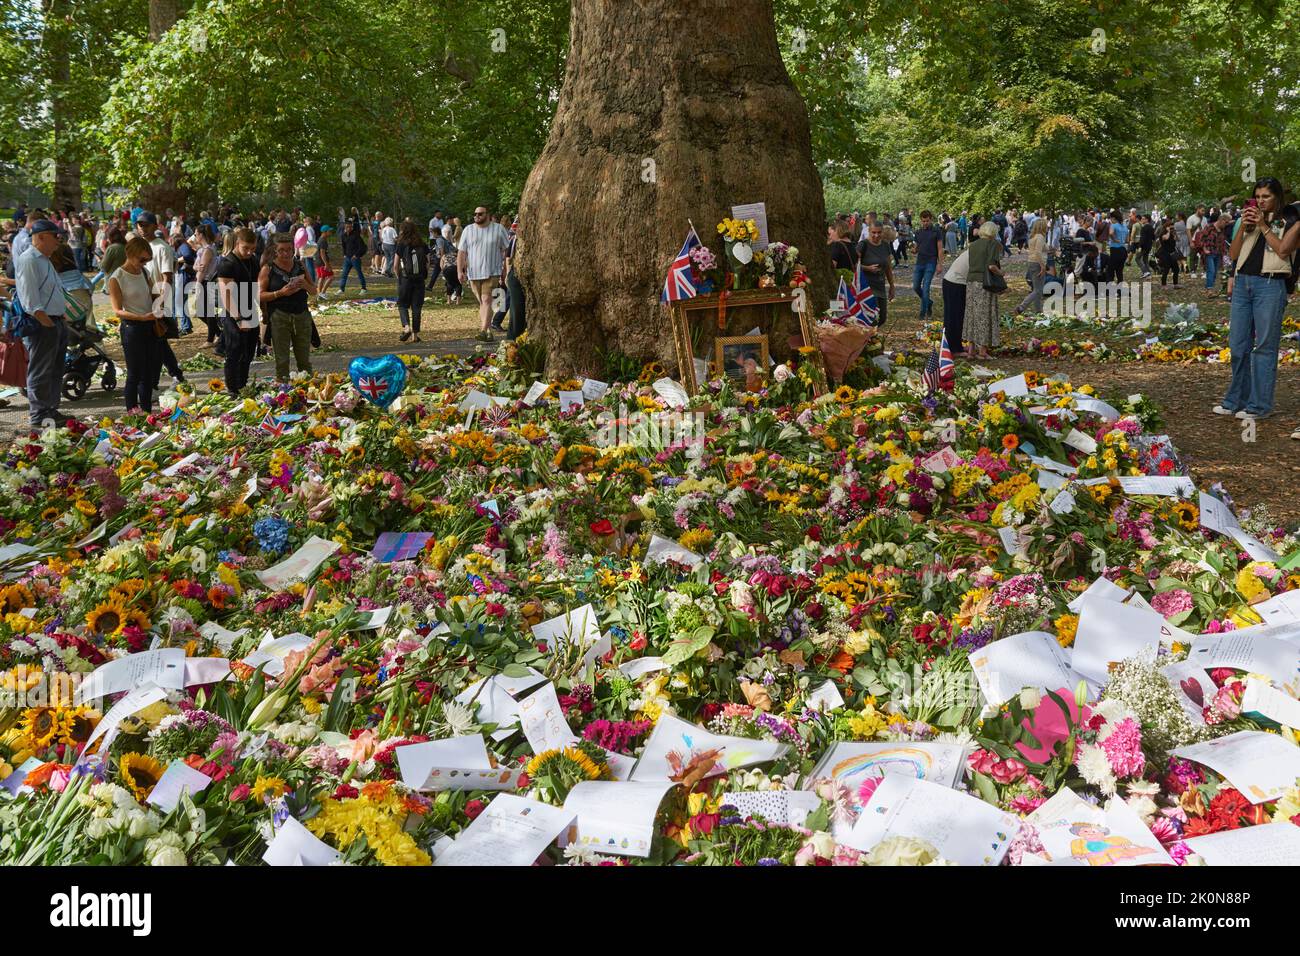 Des foules se sont rassemblées autour d'un hommage floral à la Reine, au pied d'un arbre à Green Park, Londres, Royaume-Uni, le 12th septembre 2022 Banque D'Images